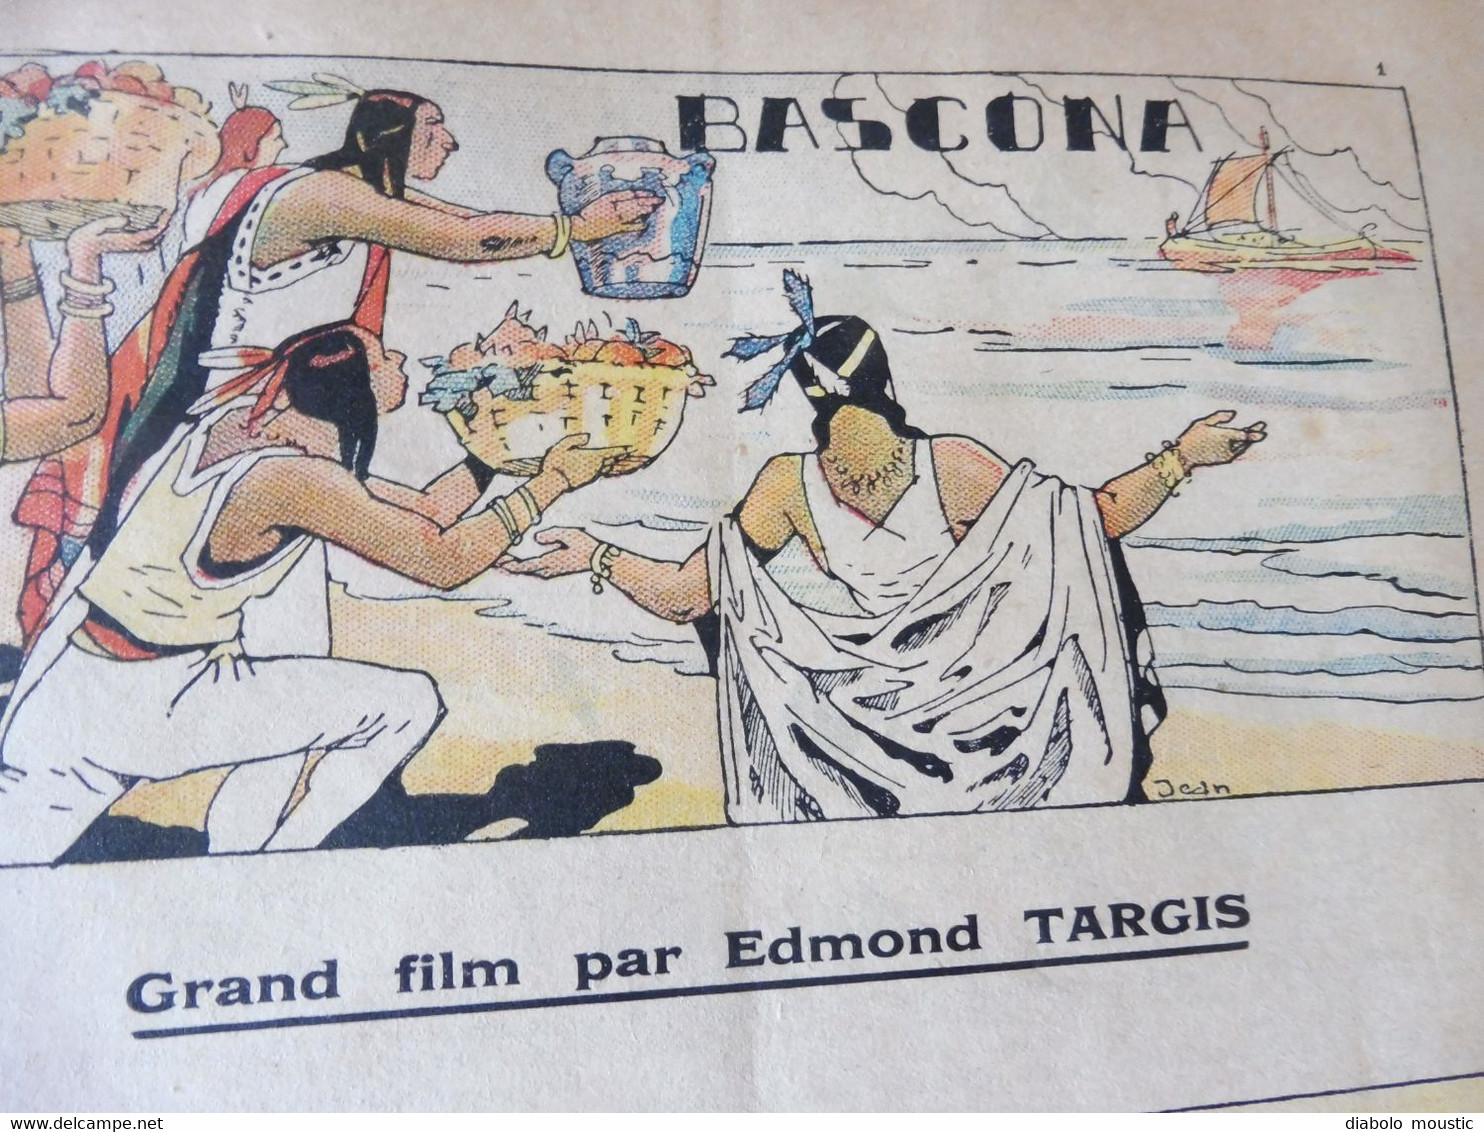 Année 1933  GUIGNOL Cinéma de la Jeunesse ...mais pas que ! ( Bascona, La Grotte du Roumi, AVIATION MILITAIRE, BD, Etc )